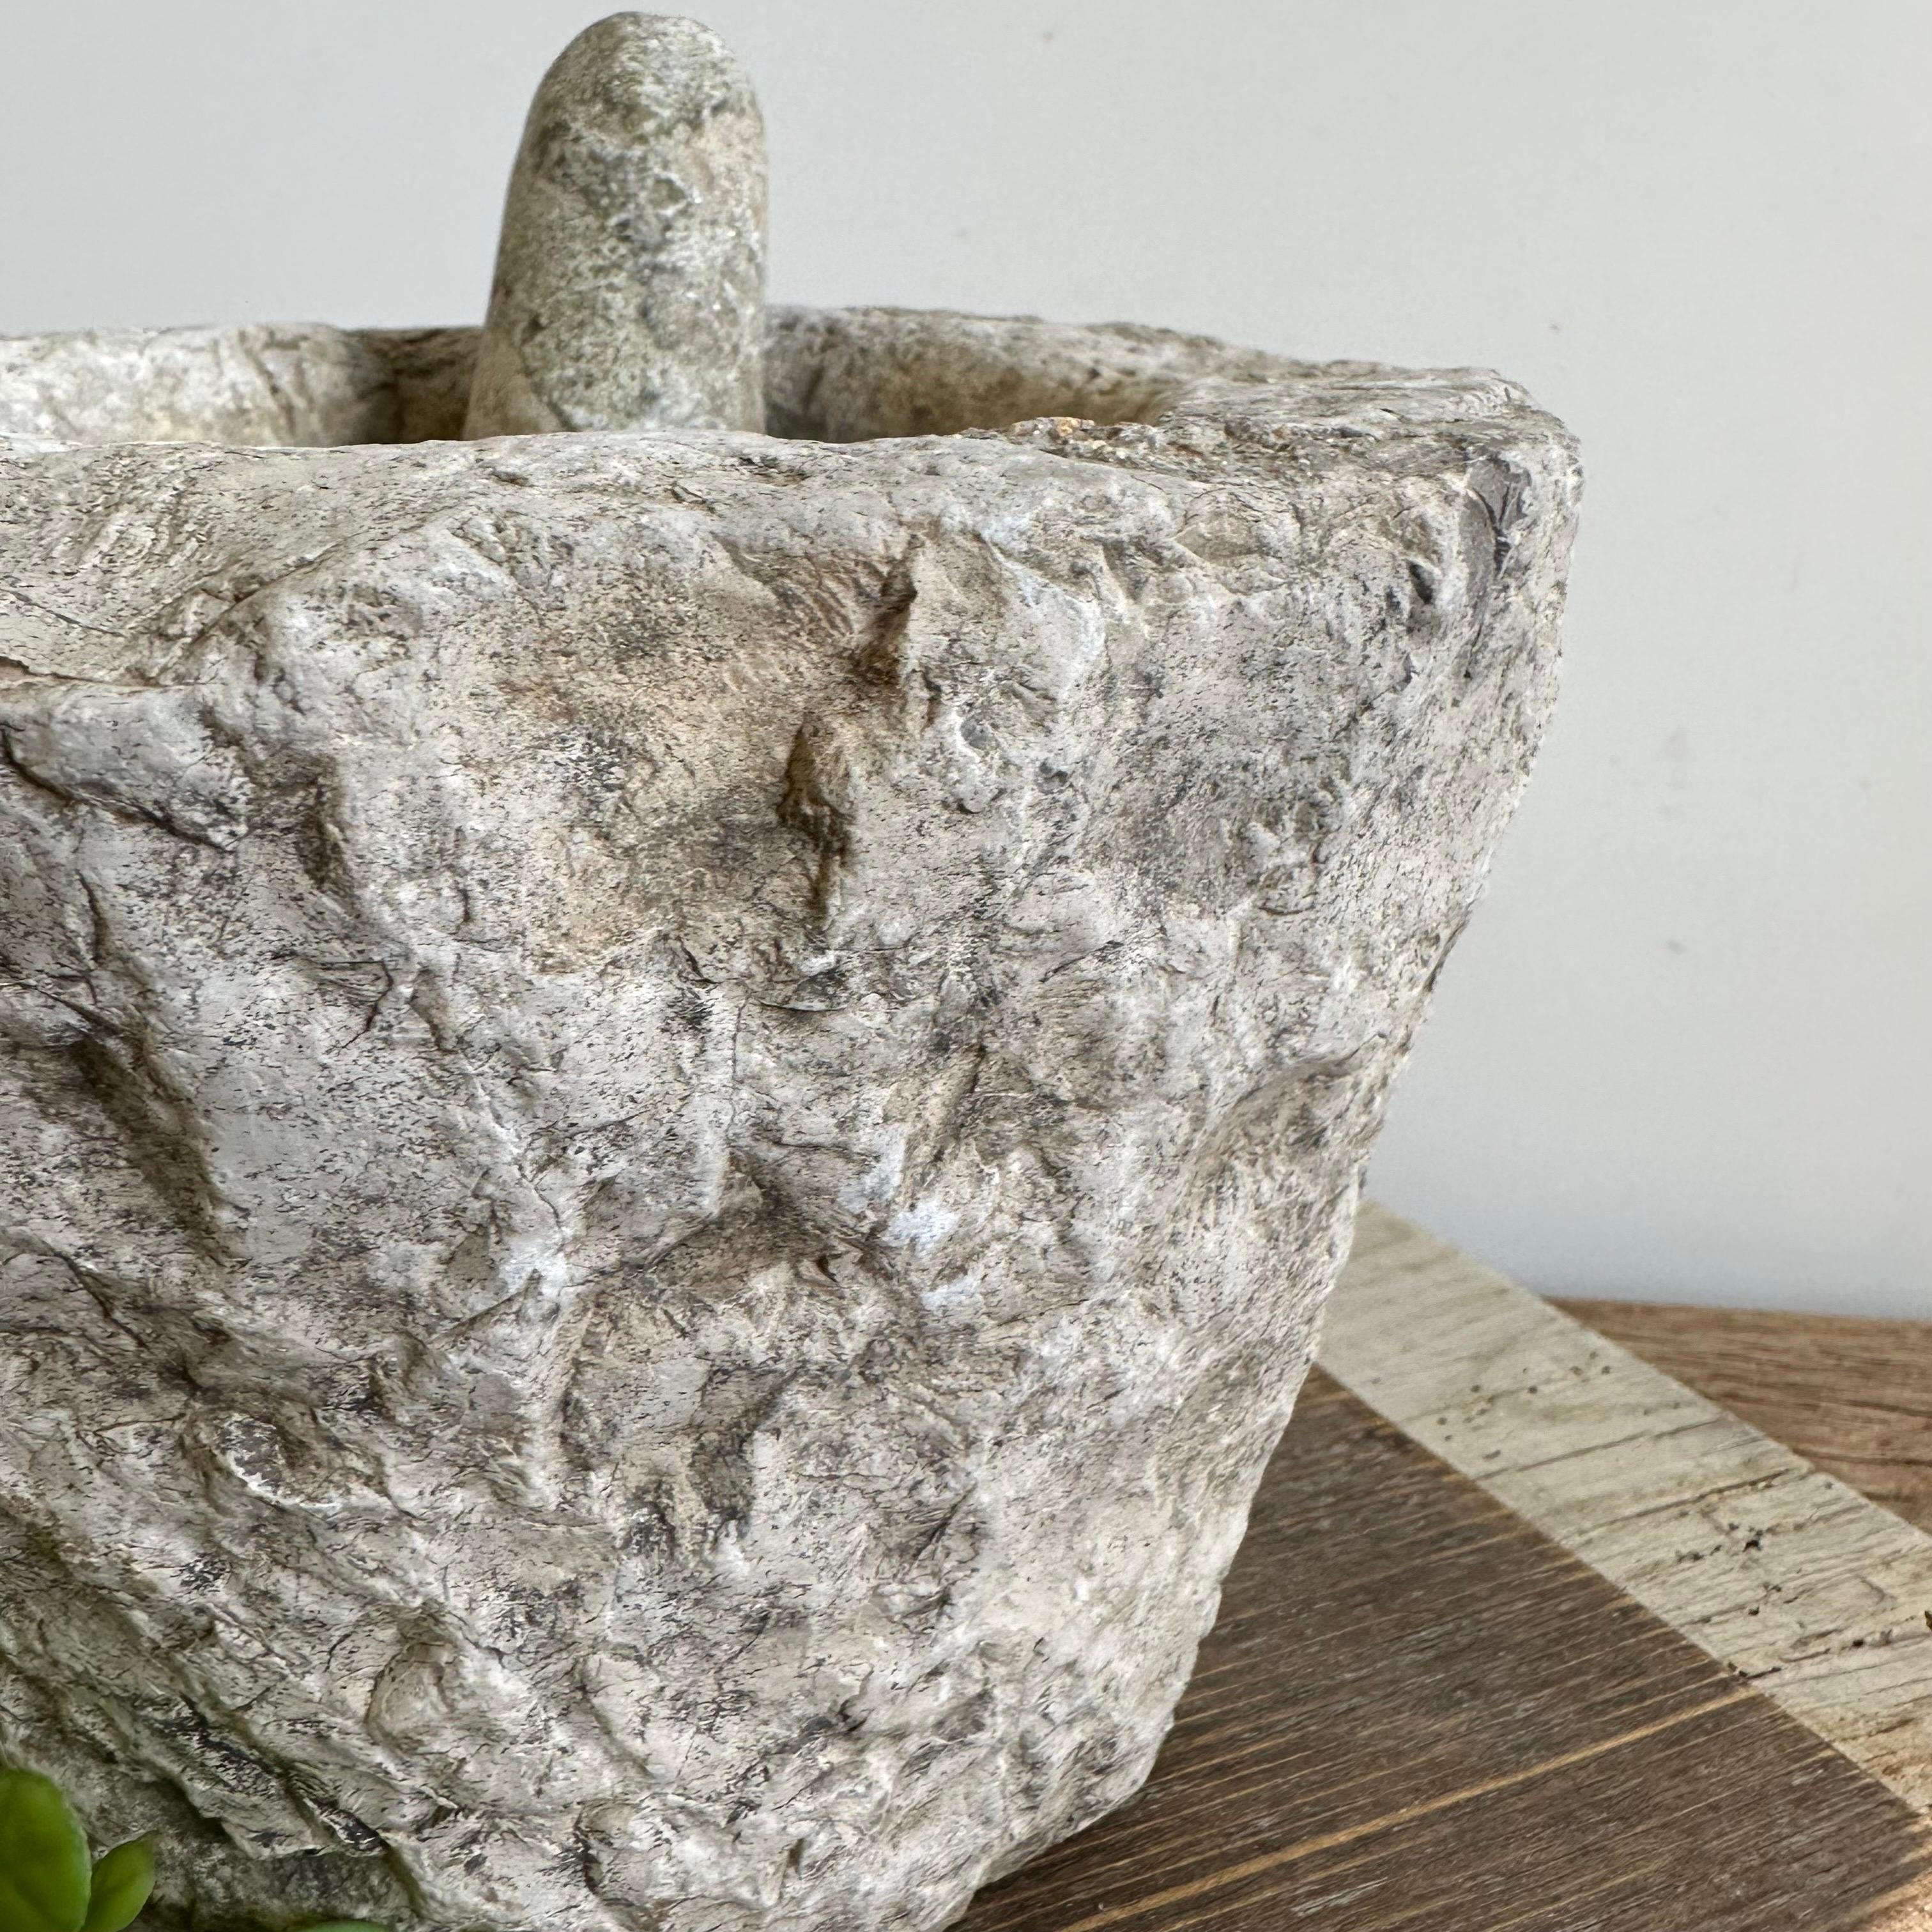 Antique Stone Mortar and pestle bowl set 
Size: 8.75”d x 6.25”h.